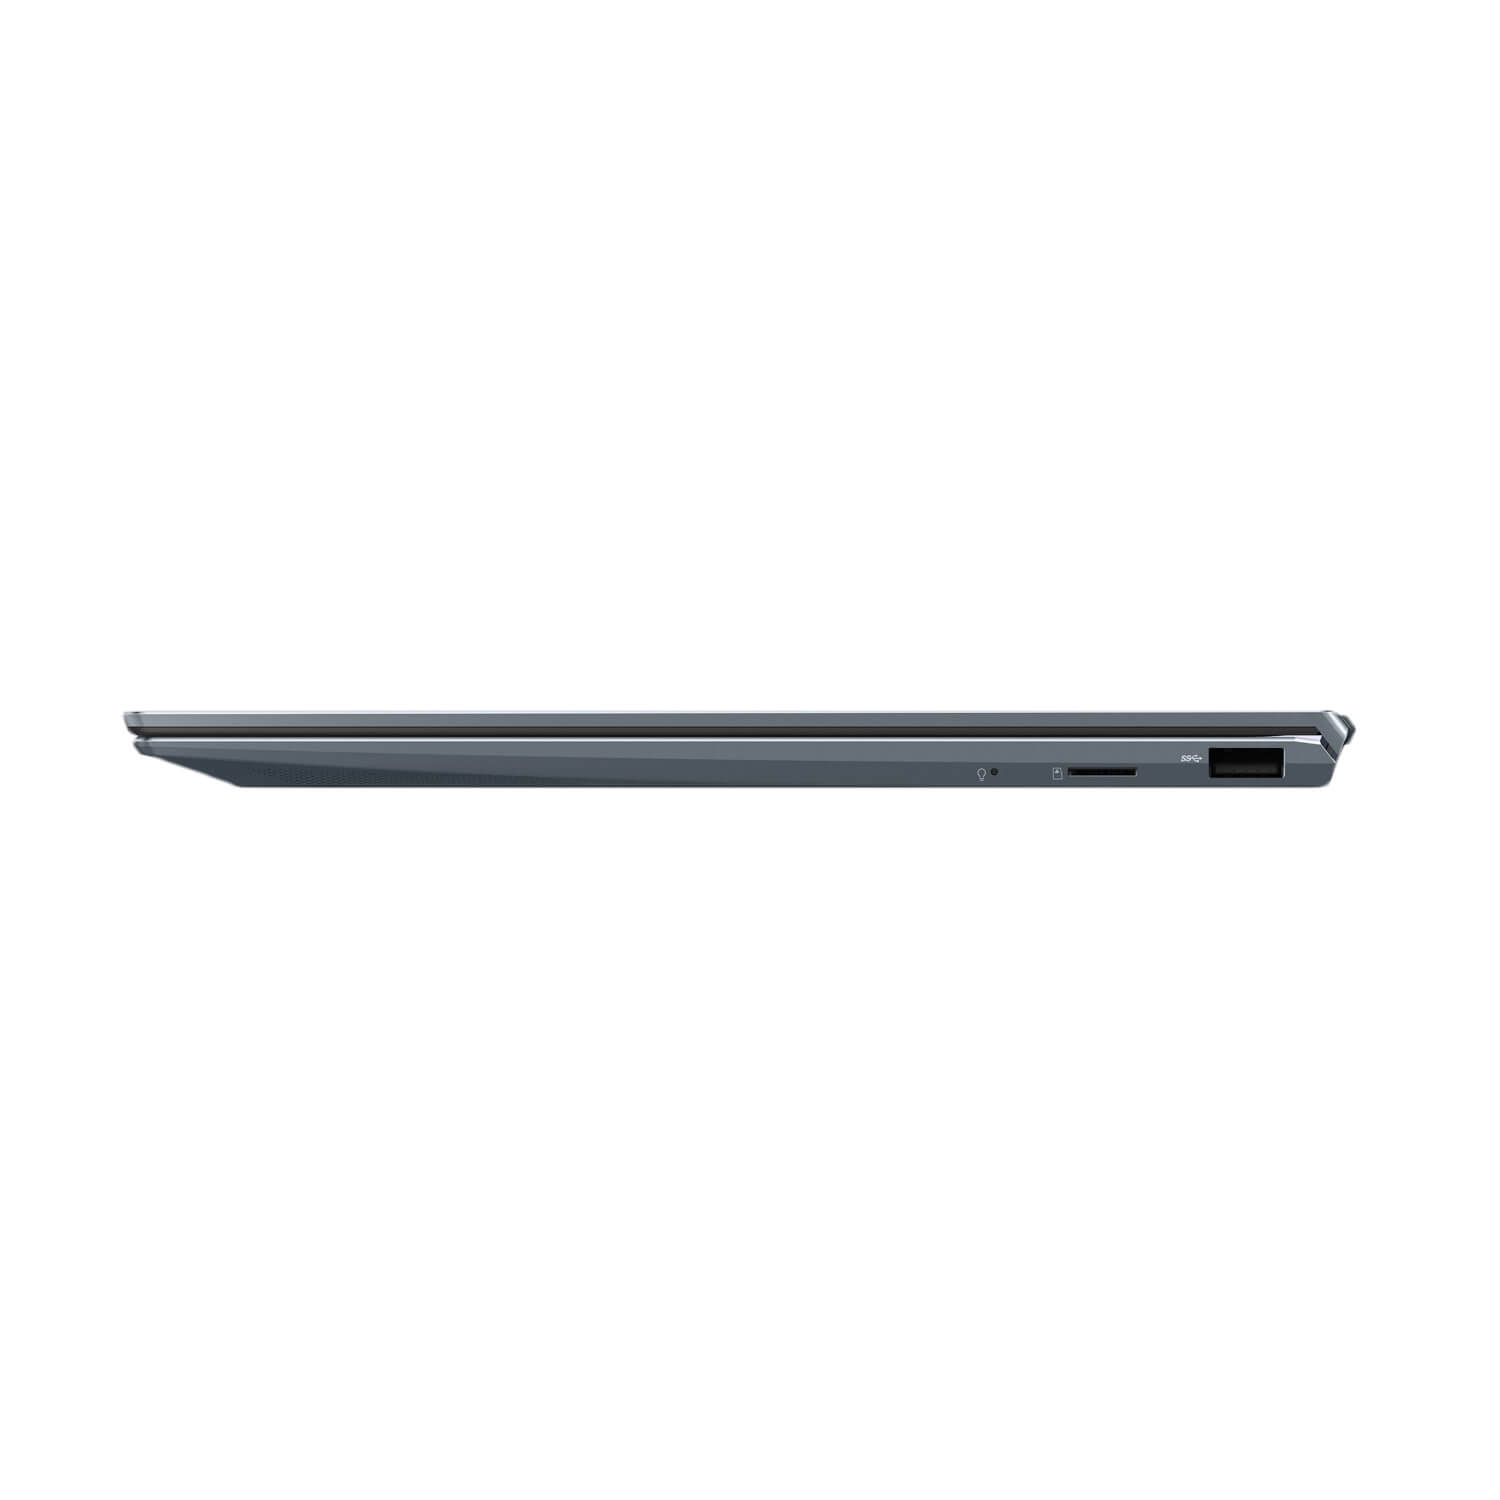 لپ تاپ ایسوس ZenBook 14 UM425UA-KI174